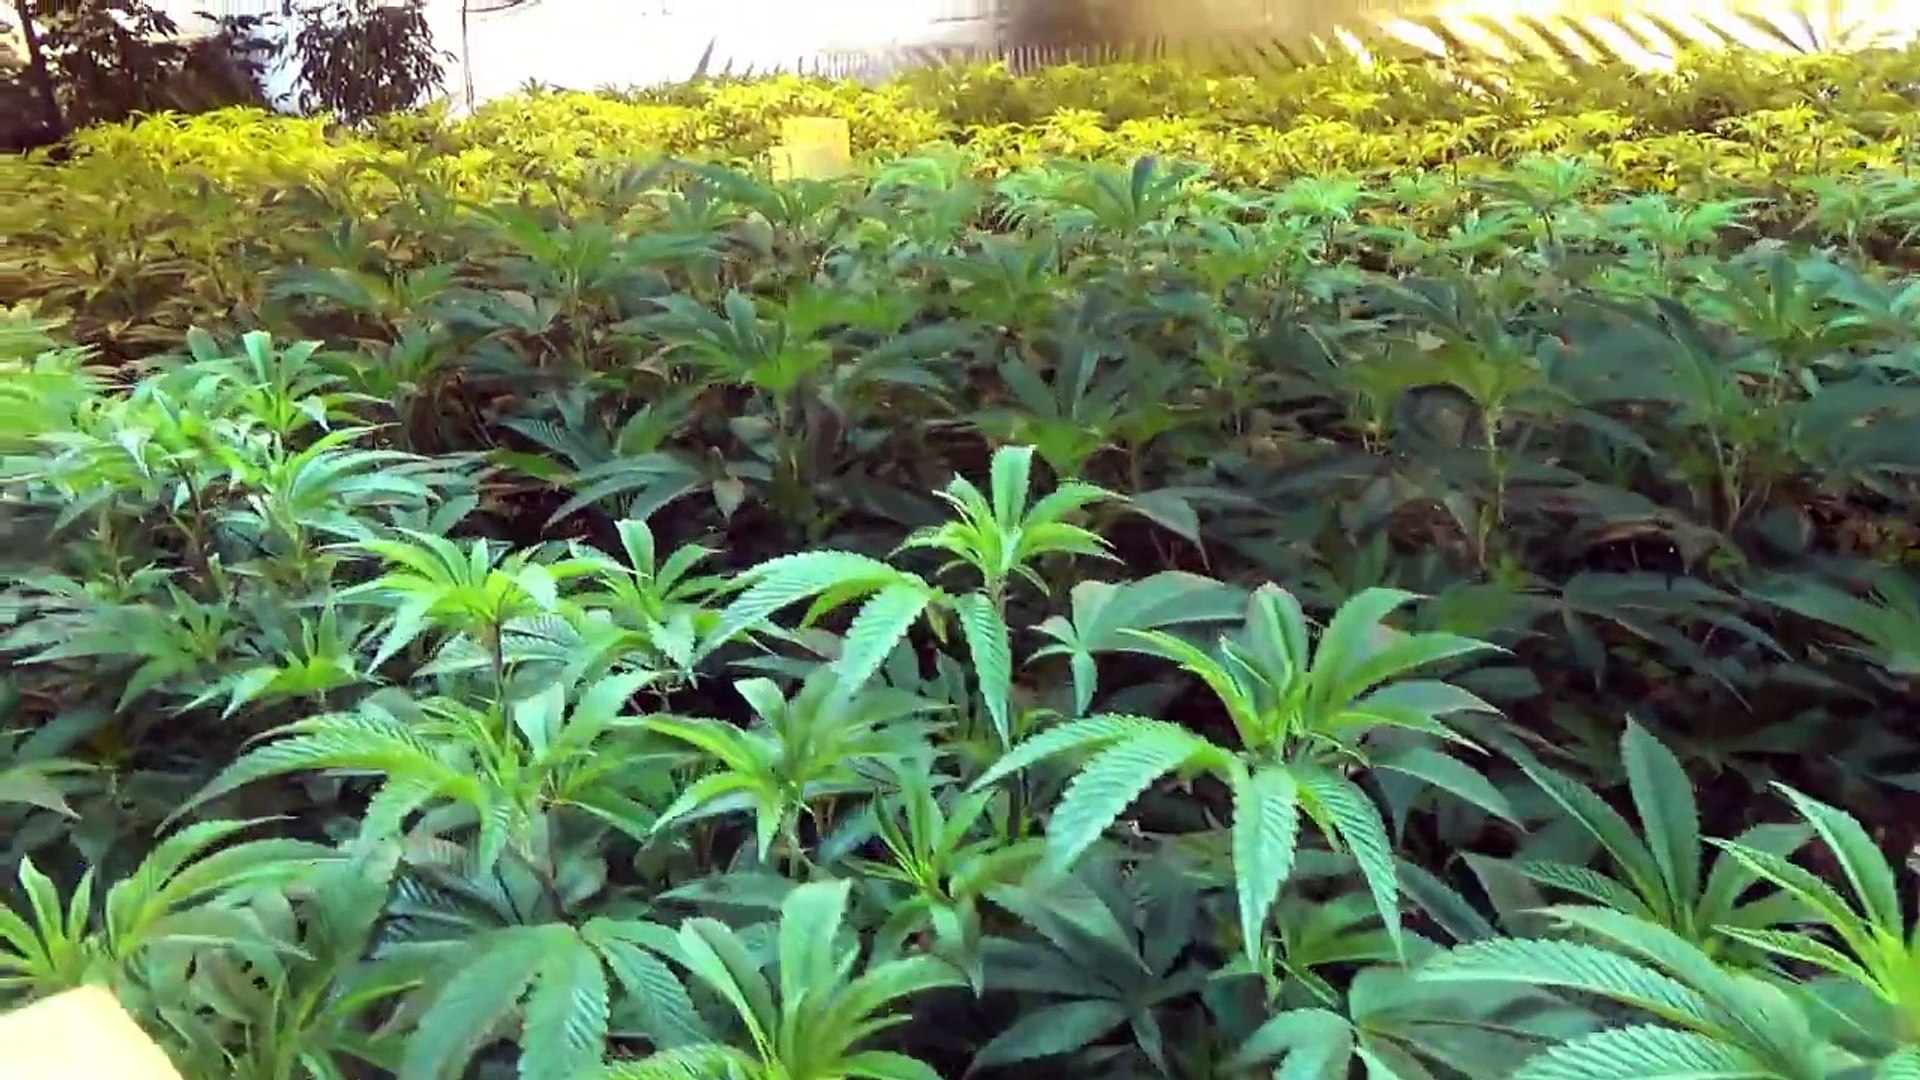 Growing Marijuana Episode 9